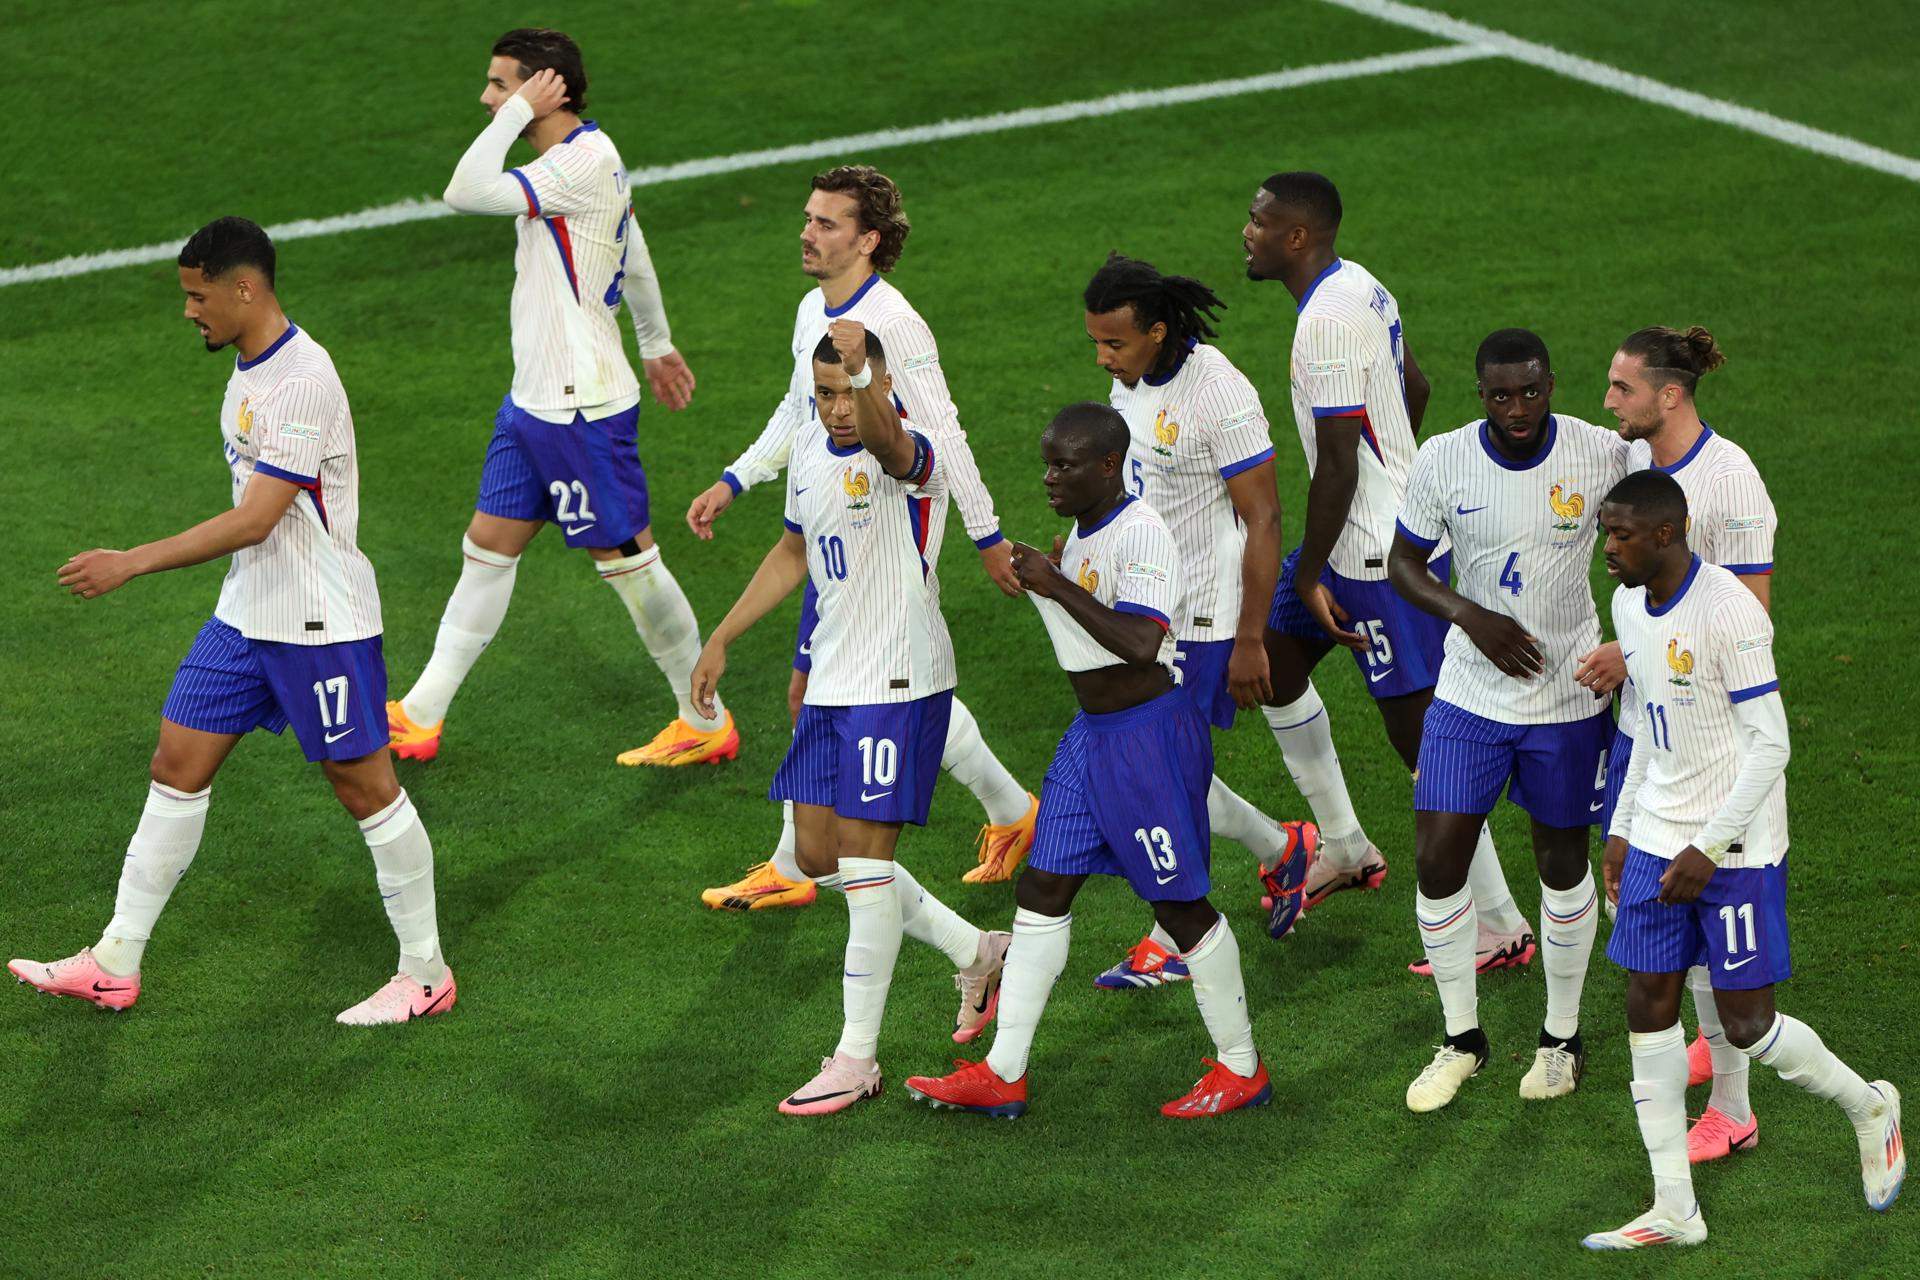 França debuta amb una accidentada victòria contra una Àustria que ha merescut més (0-1)